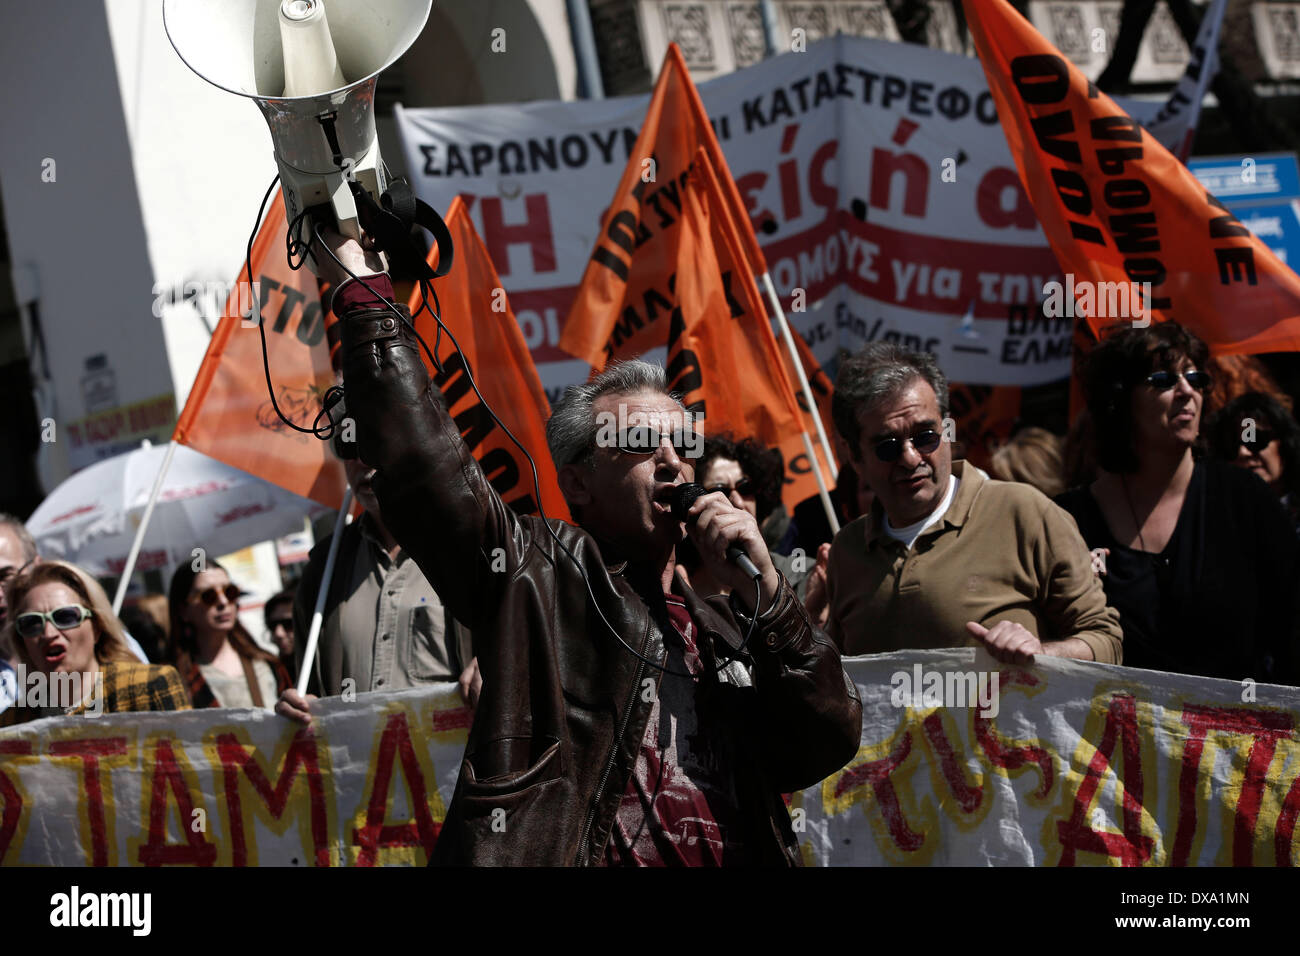 Thessaloniki, Griechenland. 21. März 2014. Lehrer und Schule Wachen protestieren die Verfügbarkeit und Entlassungen im öffentlichen Sektor unter Schulden verstrickt Landes internationale Rettungsaktion Verpflichtung auferlegt. Die Demonstranten protestierten vor dem Büro des m/s Gkiouleka Kostas, Yannis Ioannidis und Büros der PASOK. Lehrergewerkschaft (OLME) ist im 24-Stunden-Streik aus Protest gegen die drohende Entlassungen von Lehrern, weil morgen Ende der achtmonatigen Verfügbarkeitszeitraum. Thessaloniki, Griechenland am 21. März 2014. Bildnachweis: Konstantinos Tsakalidis/Alamy Live-Nachrichten Stockfoto